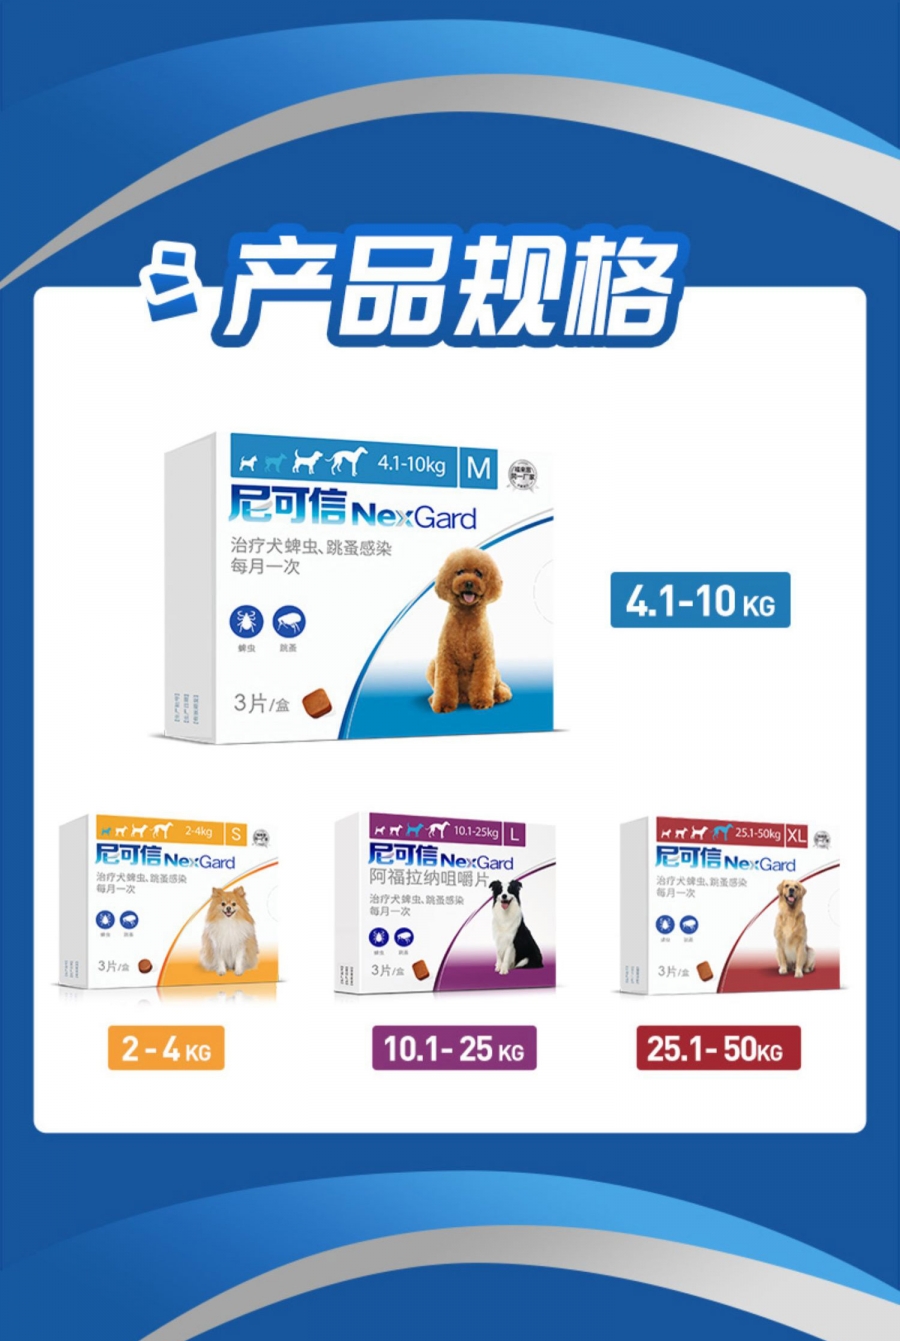 尼可信 犬用体外驱虫 口服驱虫药 适用 2-4KG犬 单粒/1个月剂量 法国进口